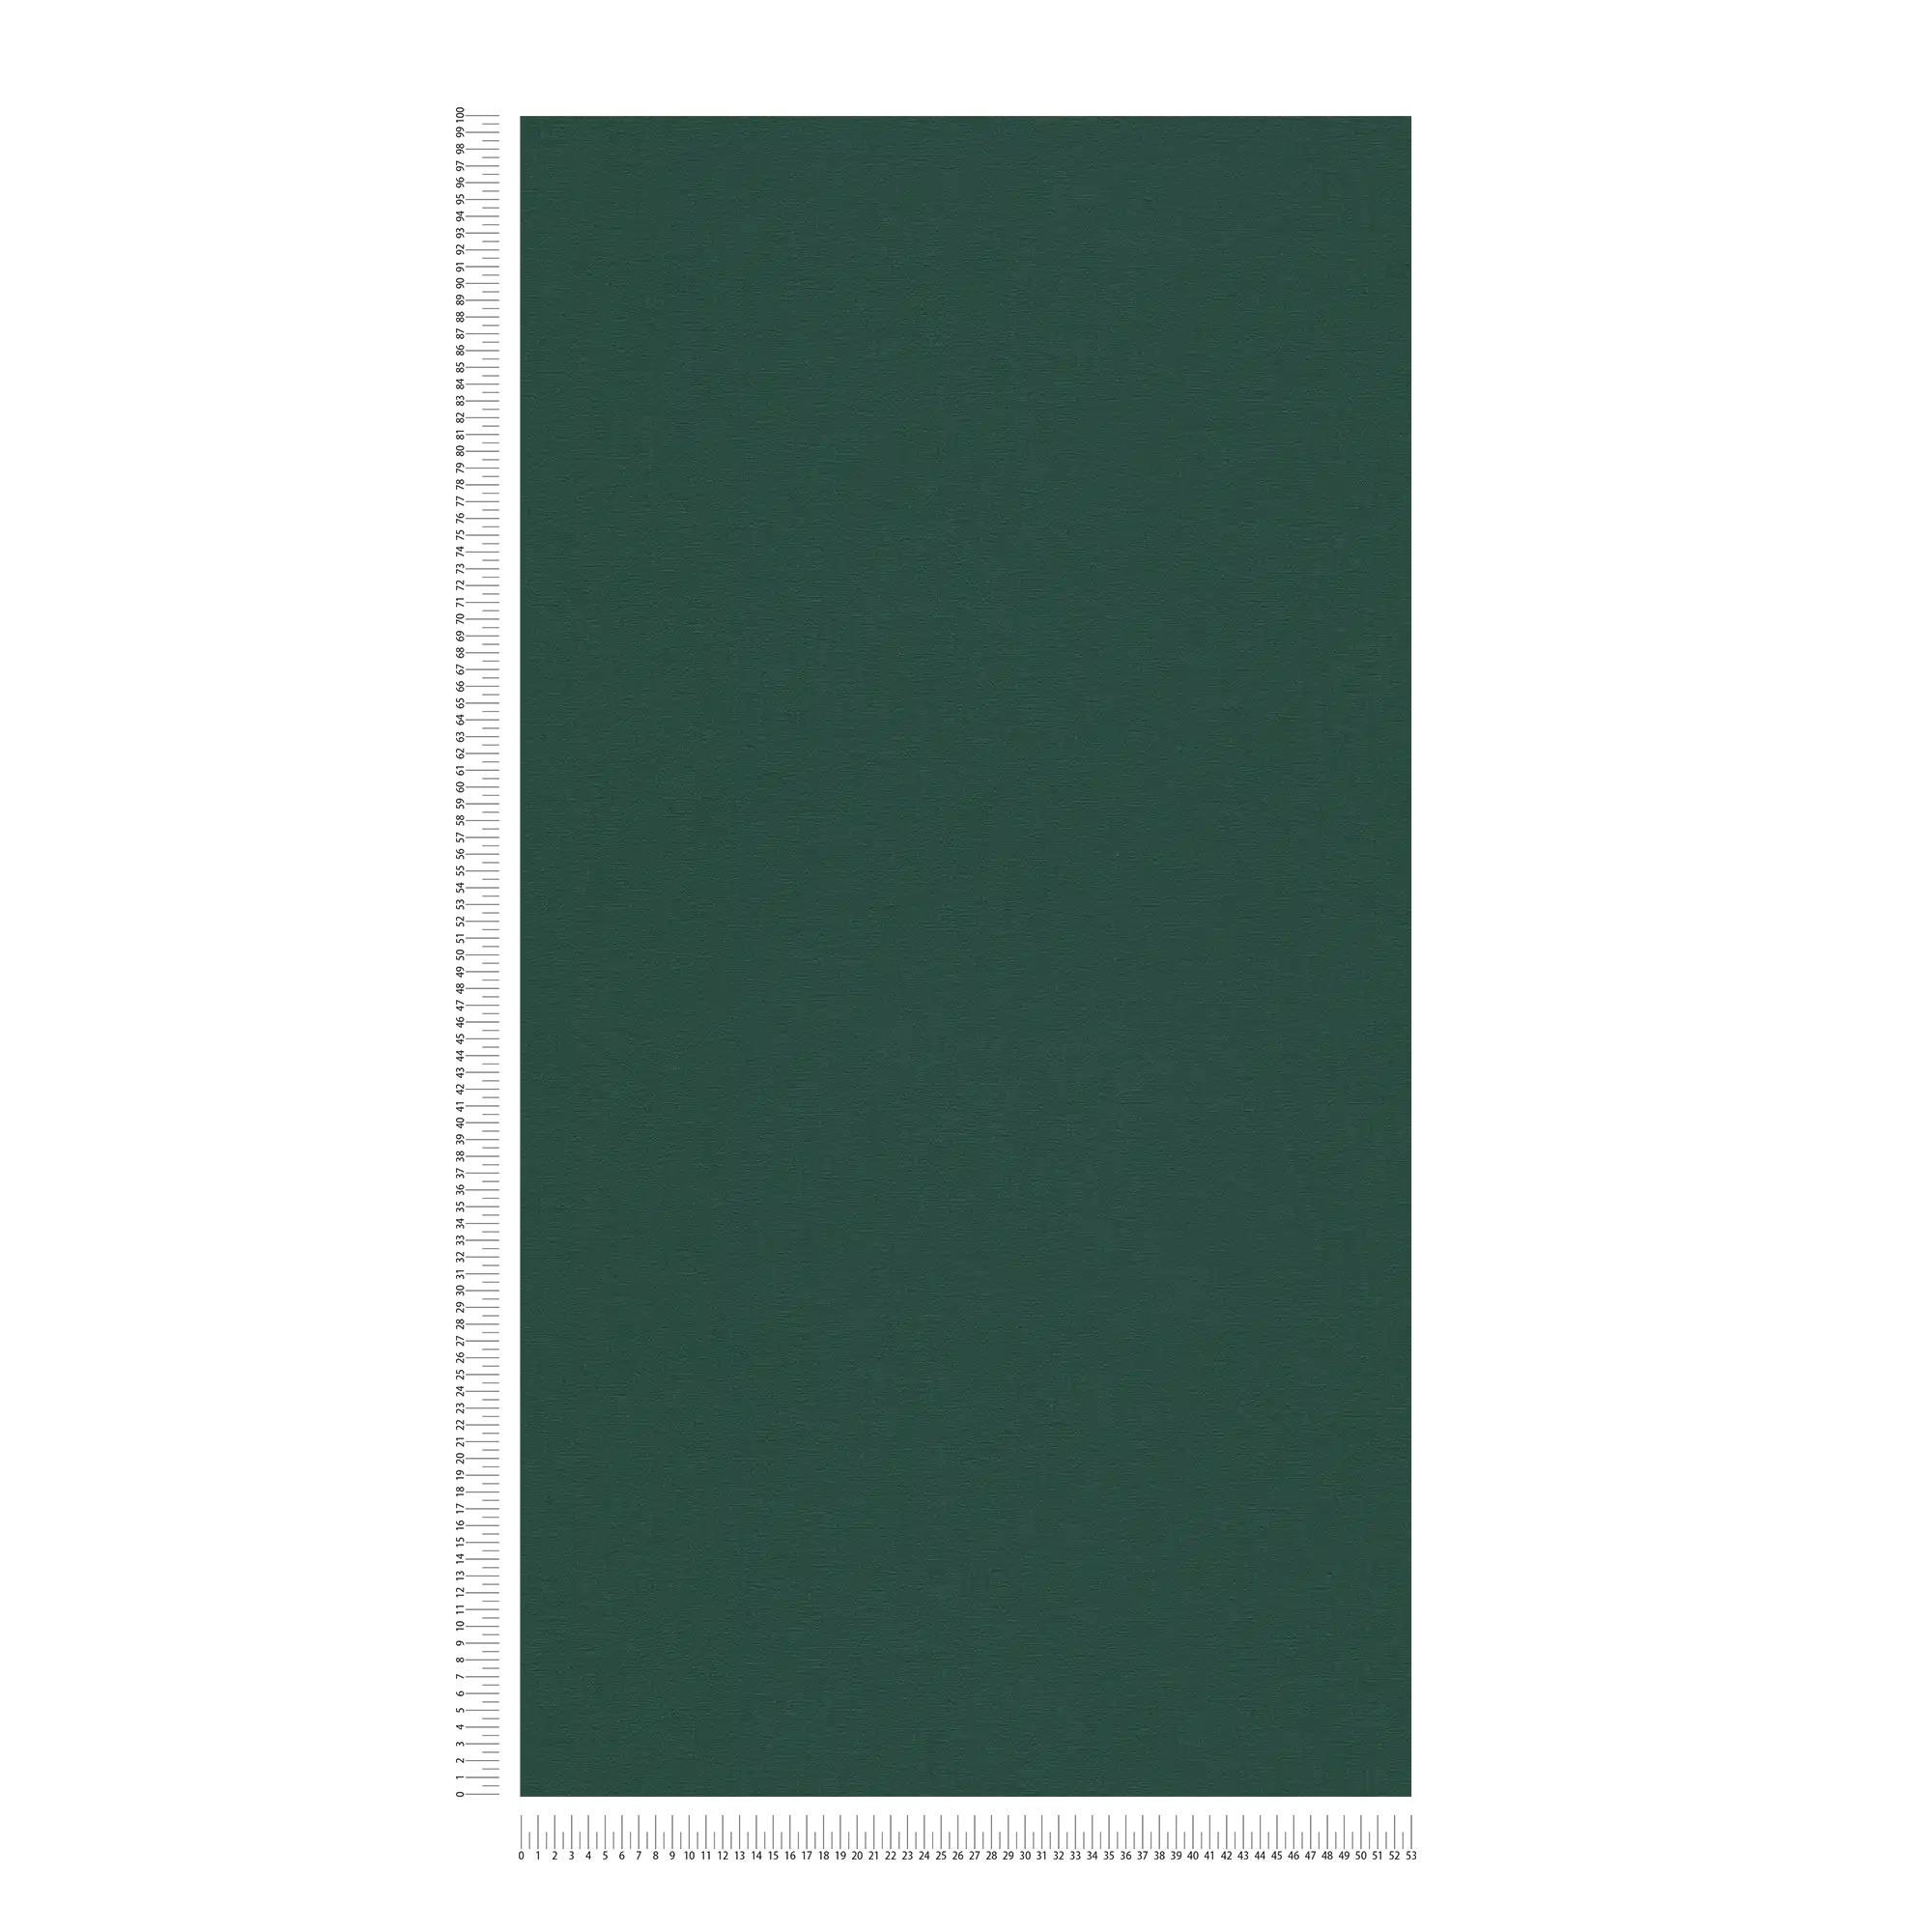             Papel pintado unitario con textura textil mate - verde, verde oscuro
        